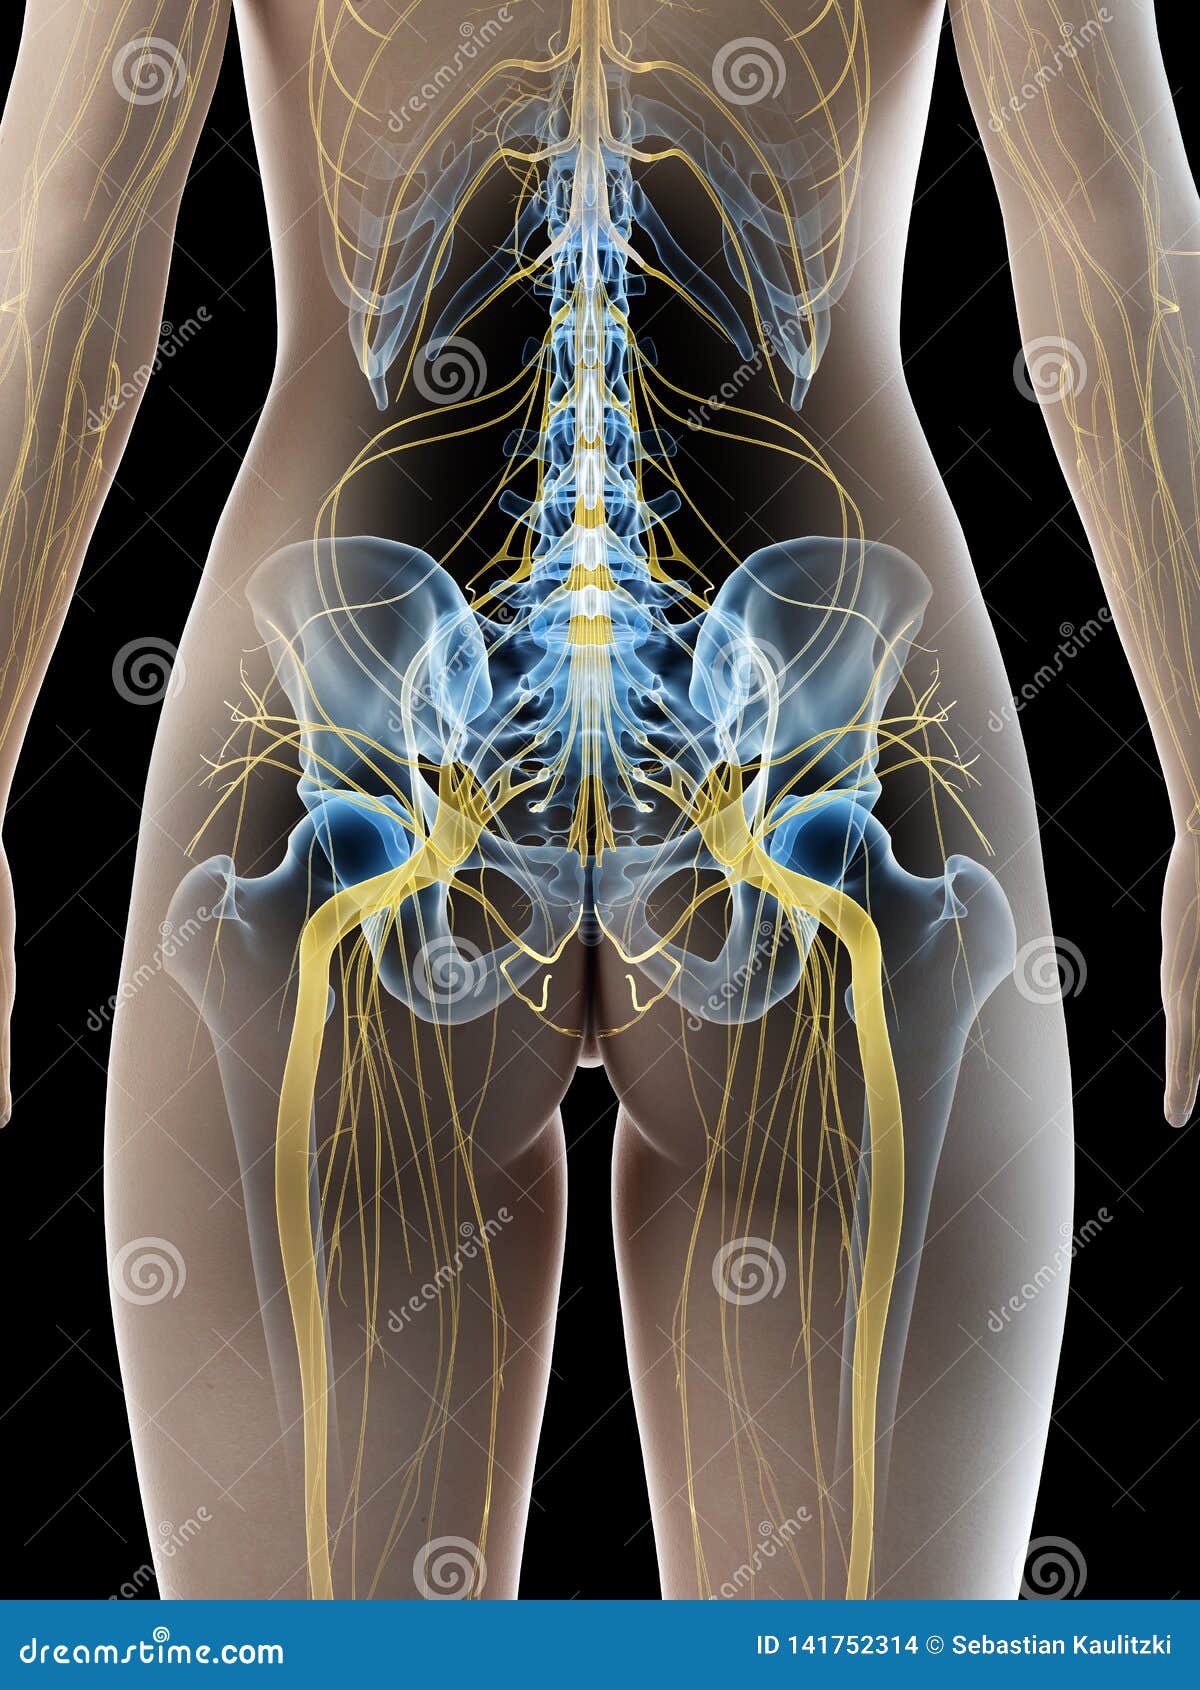 a females sciatic nerve